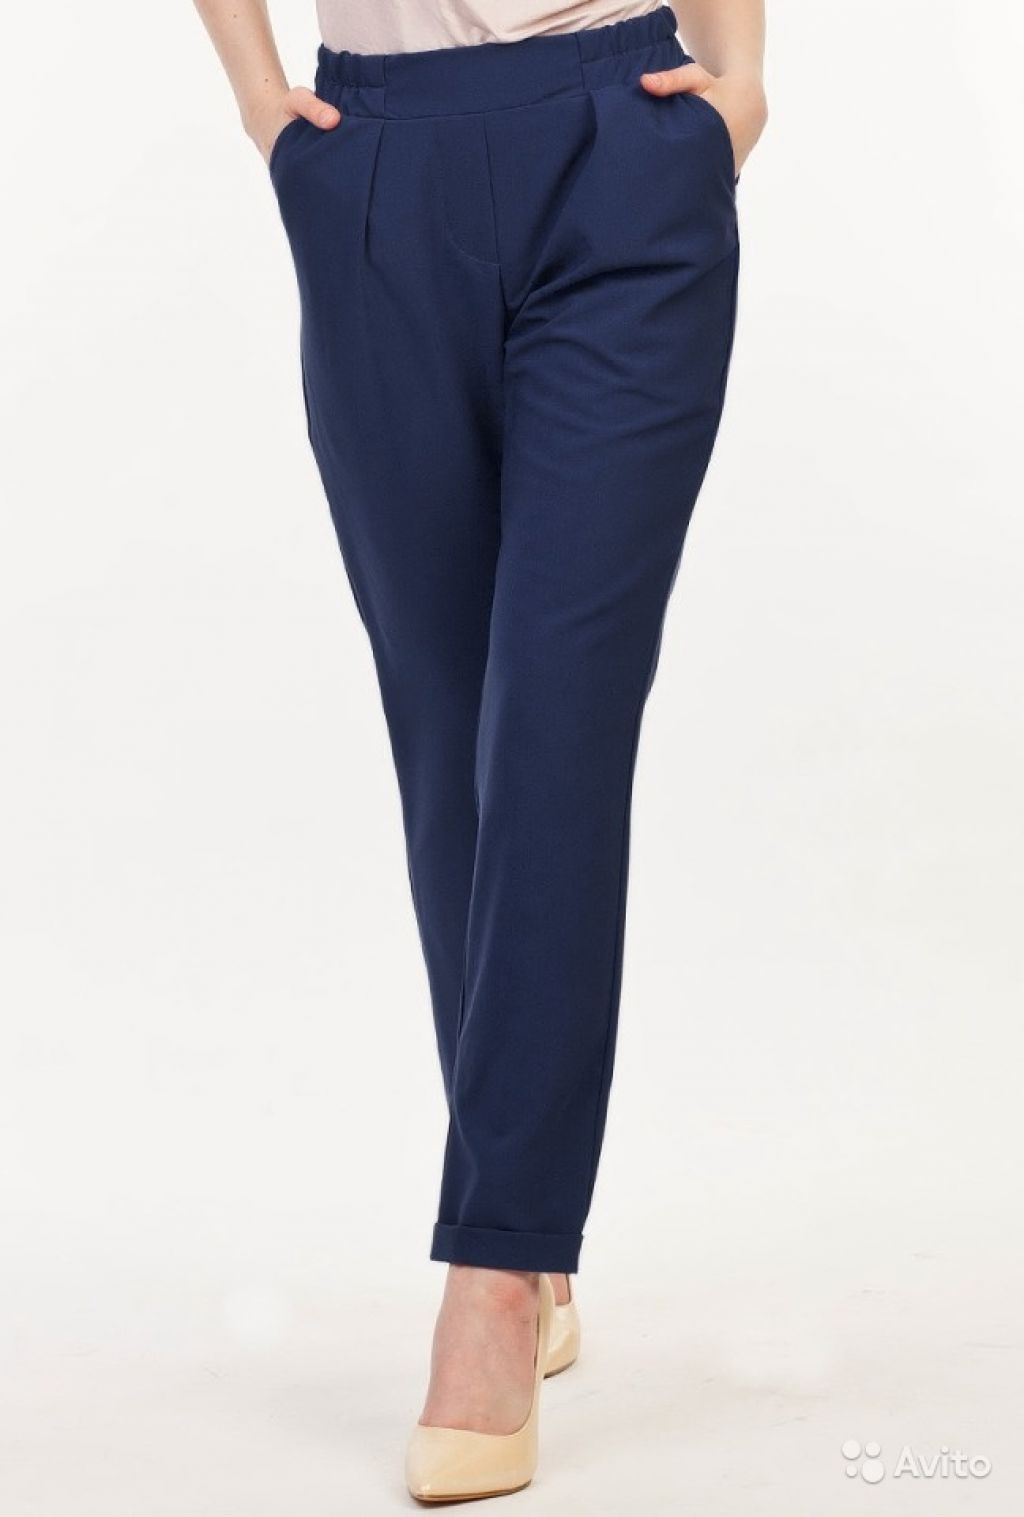 Вайлдберриз летние женские брюки легкие. Бл1701 брюки темно-синие Текстилэнд. Фирма comma шелковистые брюки. Брюки женские Fusion pantalon Lacivert 22874т. Вайлдберриз брюки женские модель 6162 Дюран.